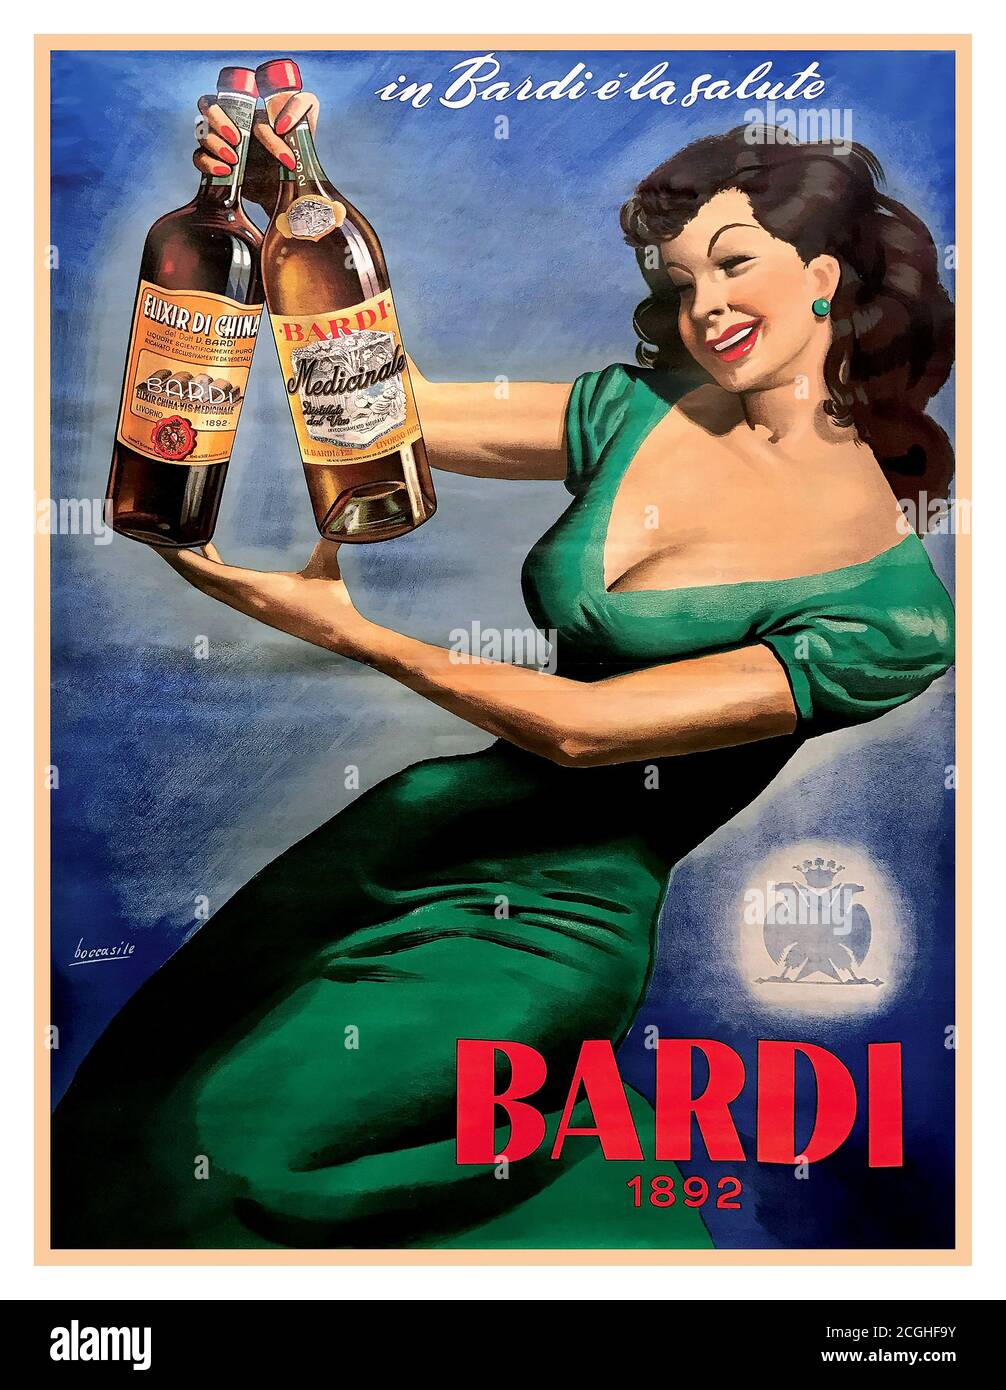 Weinlese alkoholischer Likörgetränke Plakat 1950 ‘IN BARDI E’ LA SALUTE – BARDI 1892 Lithograph mit Frau, die zwei der von Bardi hergestellten Liköre hält, die 1892 ihren Betrieb aufgenommen haben. Der Künstler Gino Boccasile (1901-1952) war ein einflussreicher Künstler, der in seiner Karriere viele der Konzepte des Art Deco-Einflusses adaptierte, aber den schärferen Linien des klassischen Art Deco eine Rundheit und Form zufügte. Gino Boccasile (1901-1952), IN BARDI E’ LA SALUTE – BARDI 1892 Lithografisches Plakat der ersten Auflage. 1950. Entworfen von Boccasile und signiert von ihm auf Lithographie Stockfoto